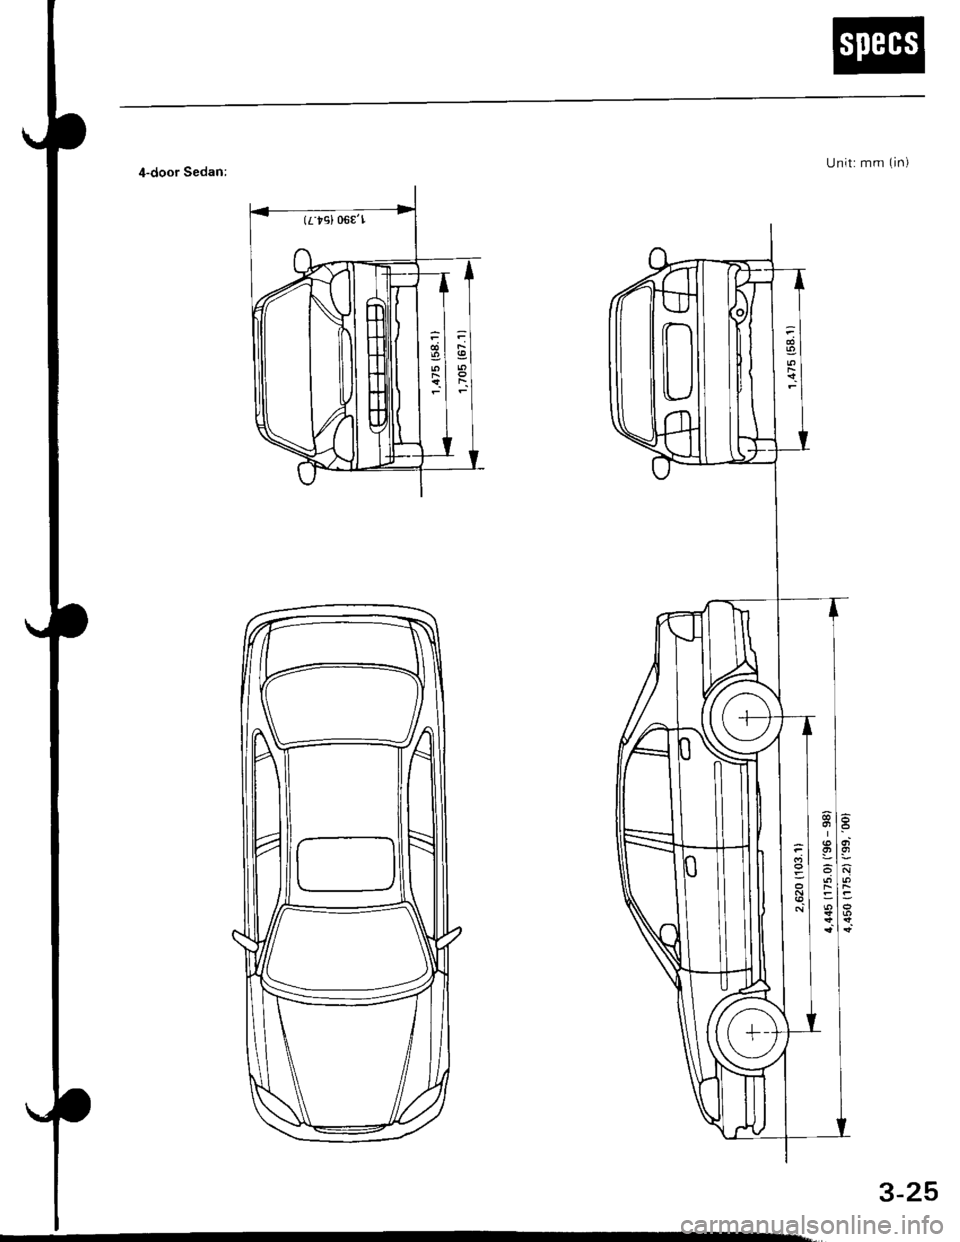 HONDA CIVIC 1997 6.G Repair Manual (rtsl 06€l
U nit: mm (in)4-door Sedan:
3-25 